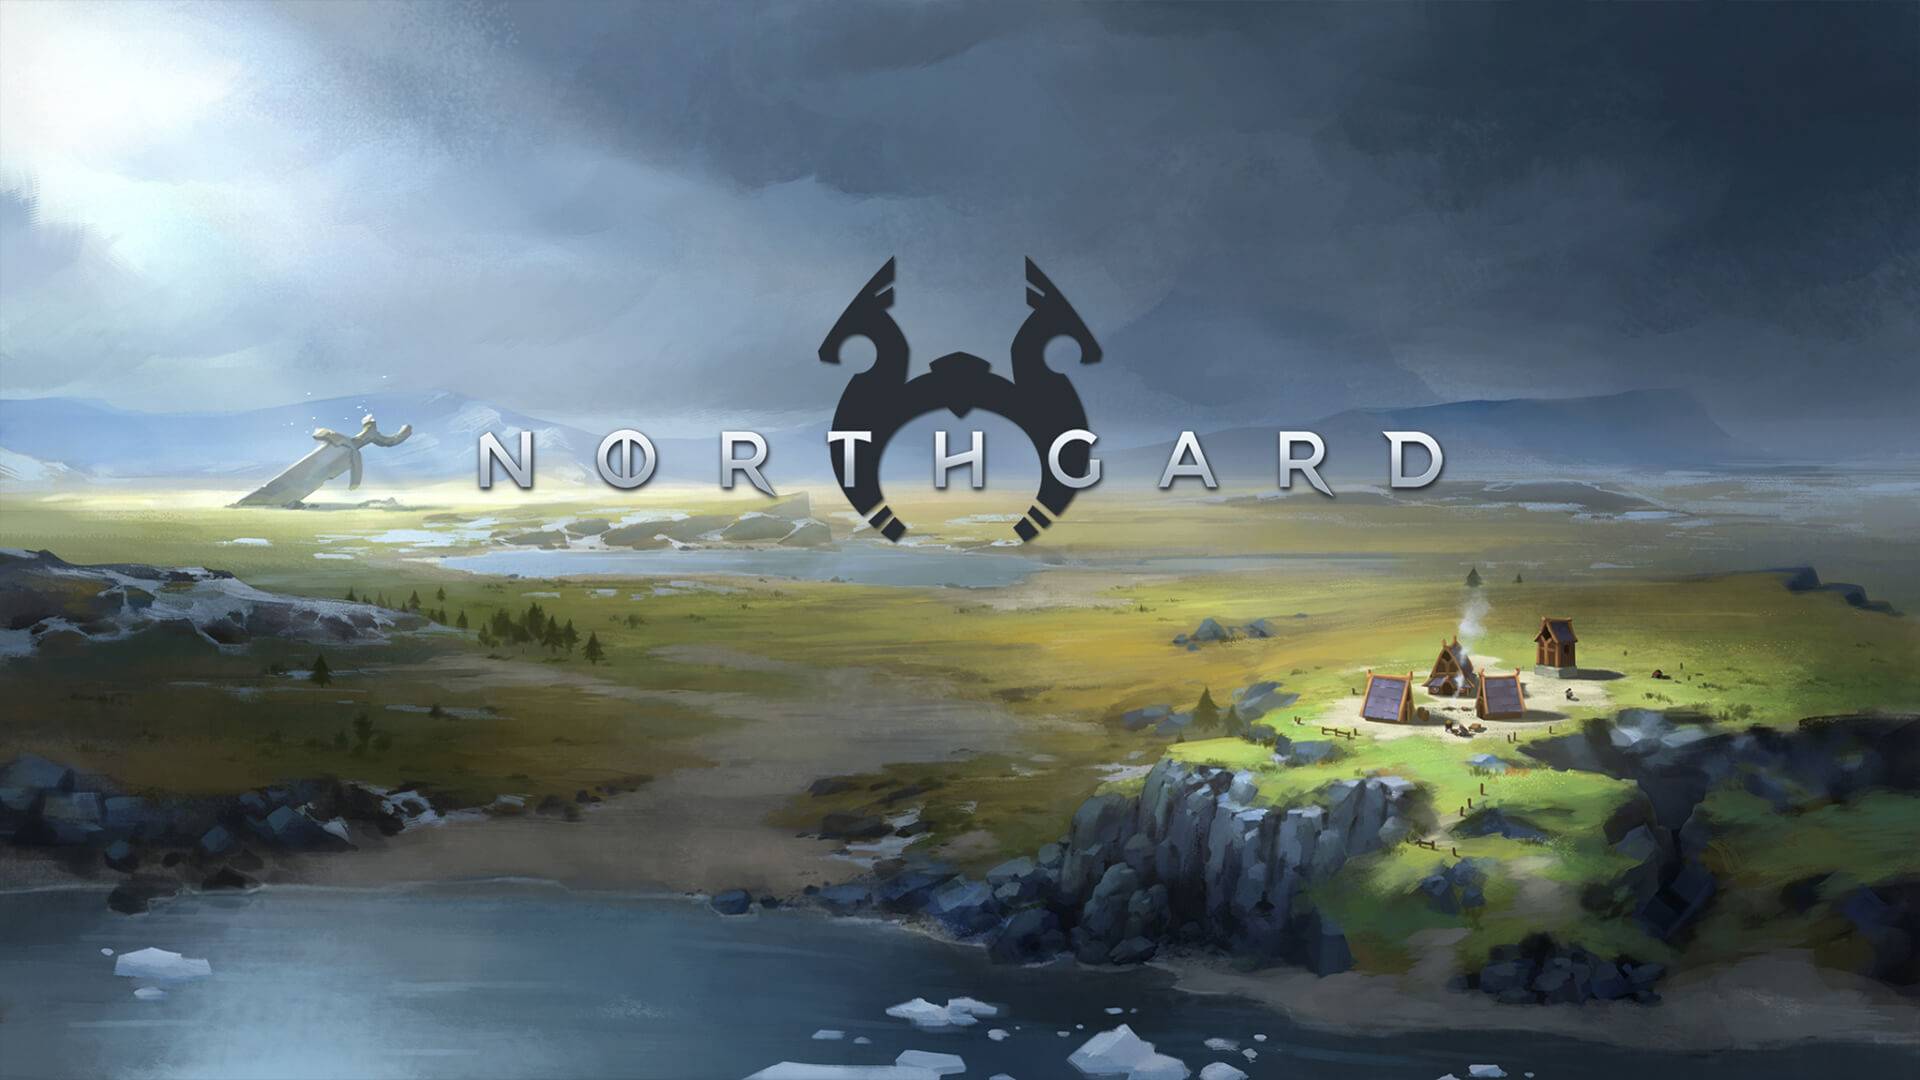 Northgard#5|Отремонтировал кота|Переезд на студию через неделю